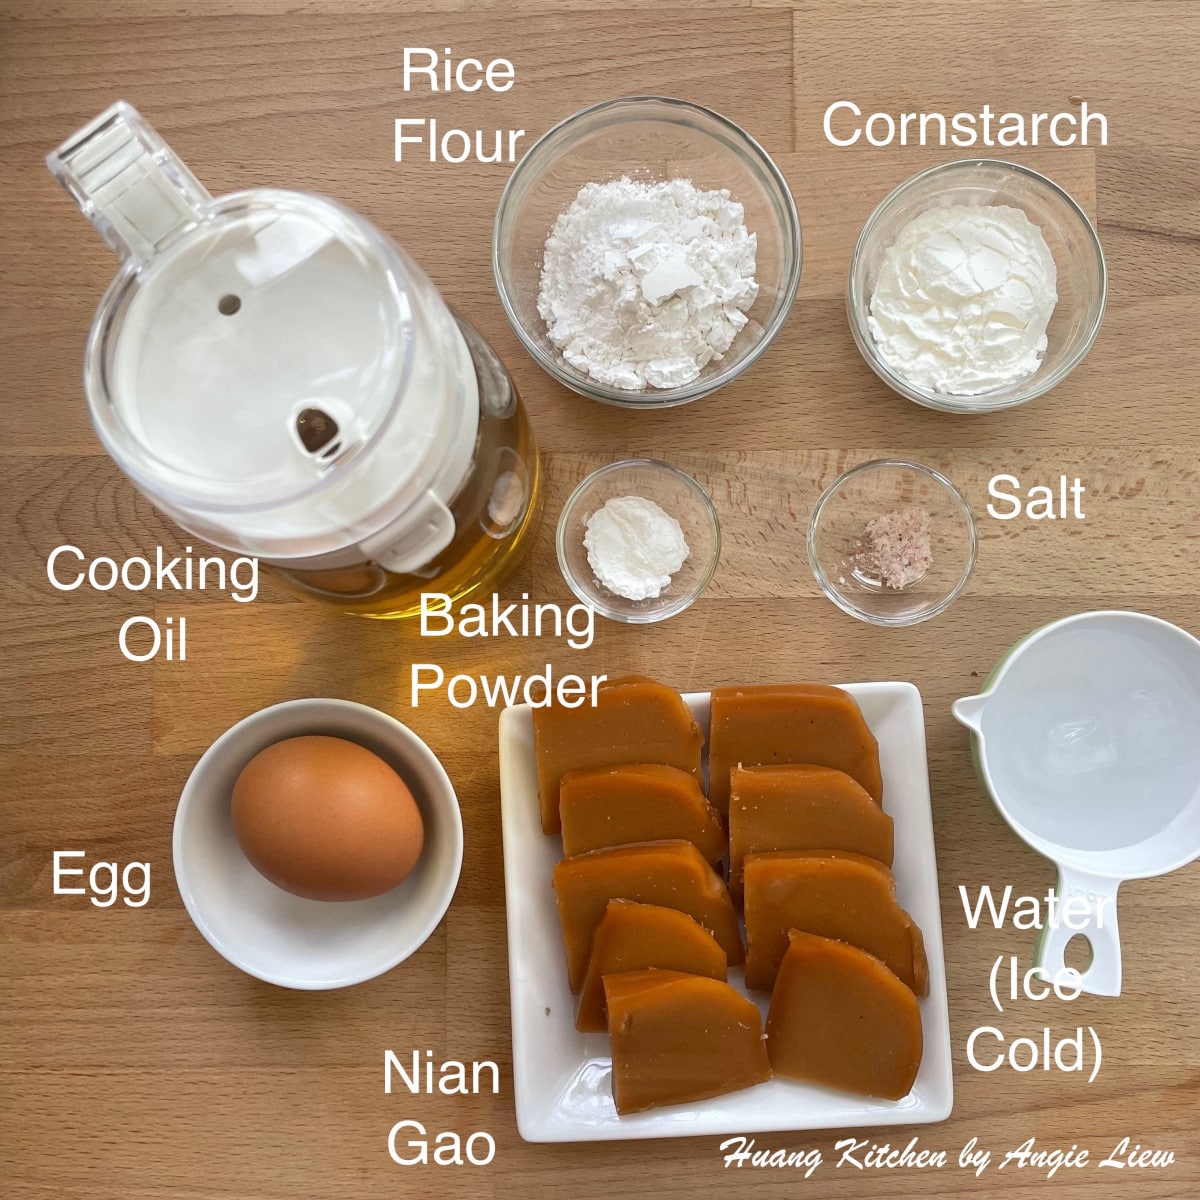 Ingredients to make Pan Fried Nian Gao